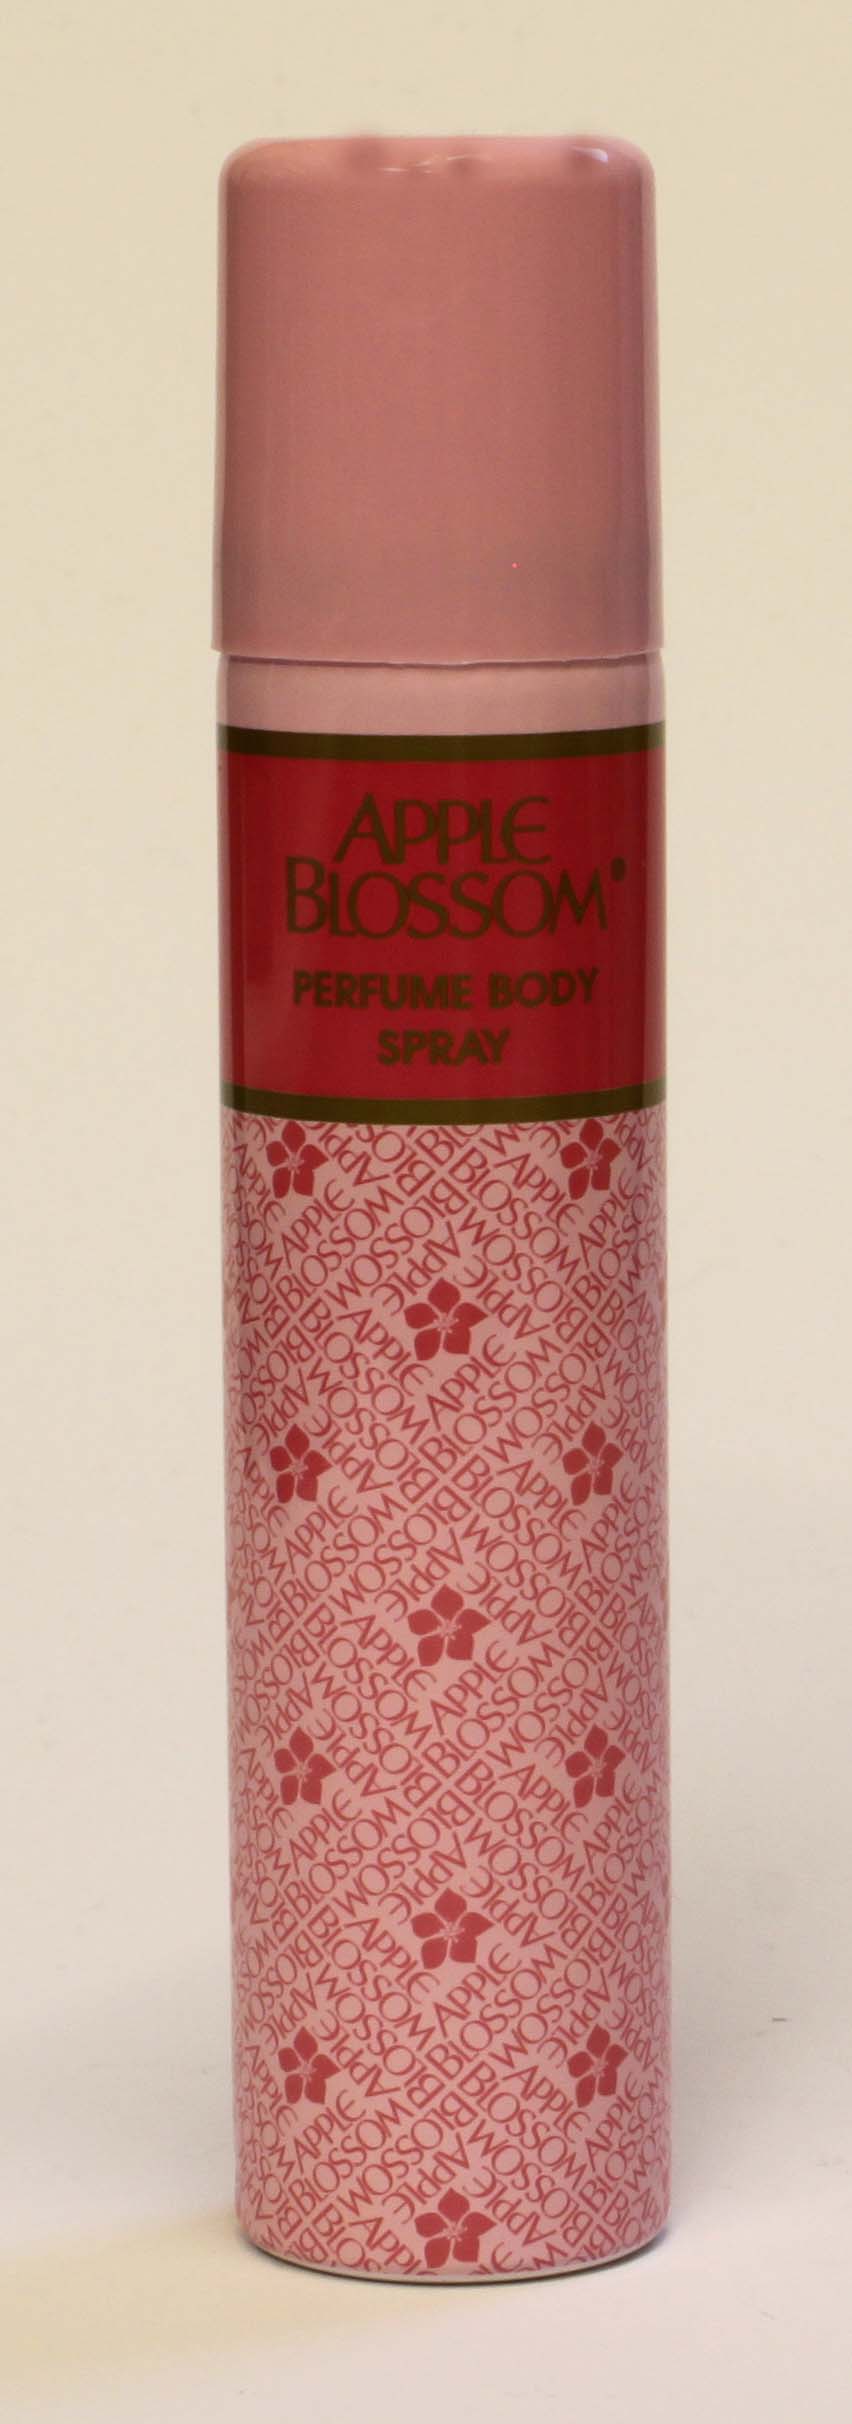 Apple Blossom Perfume Body Spray - 75ml